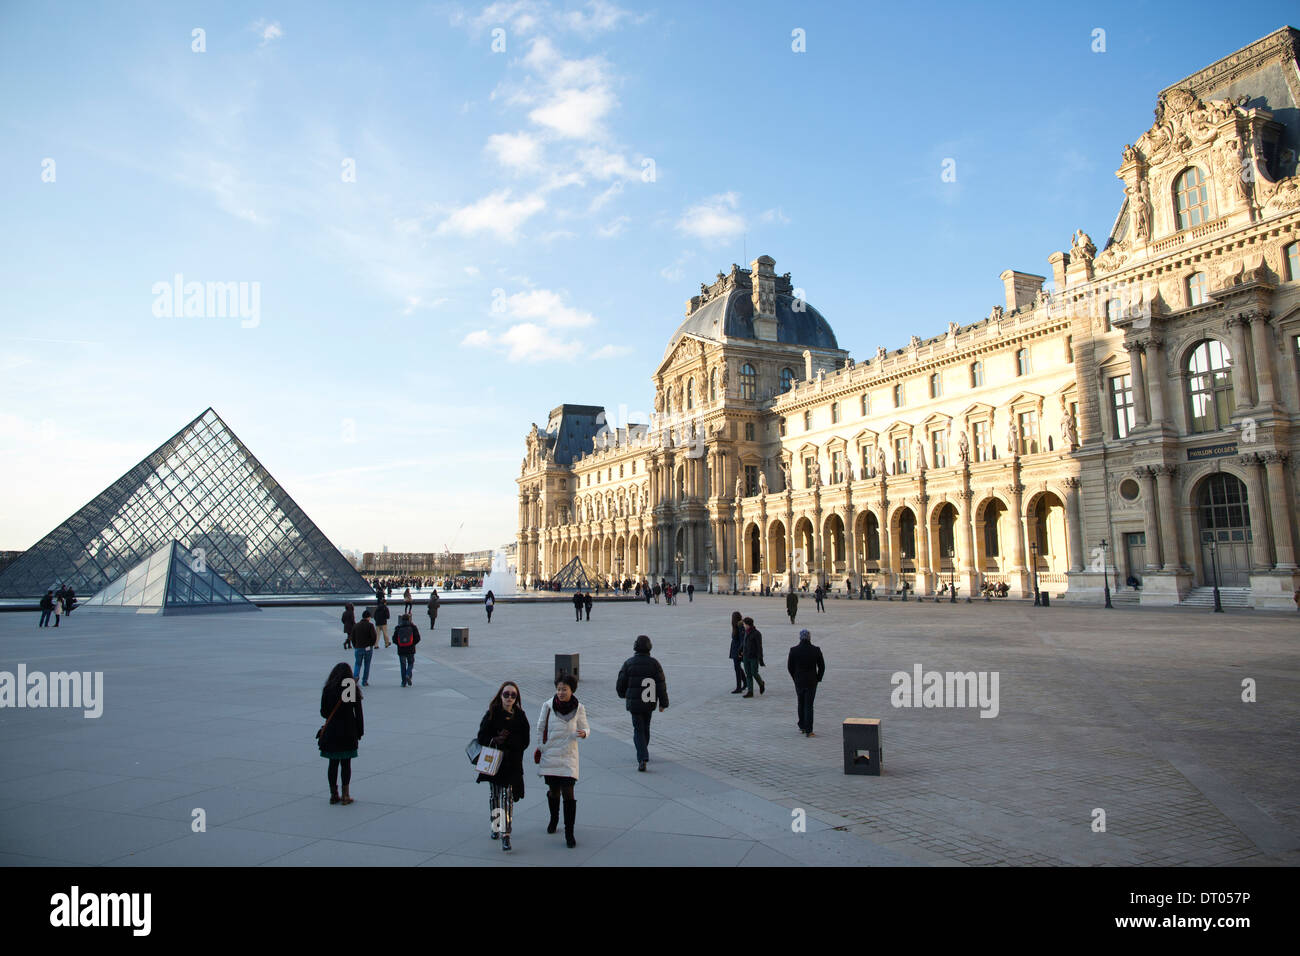 Pyramide de verre au Musée du Louvre dans le centre de cour Napoléon à côté du palais du Louvre, Paris, France. Banque D'Images